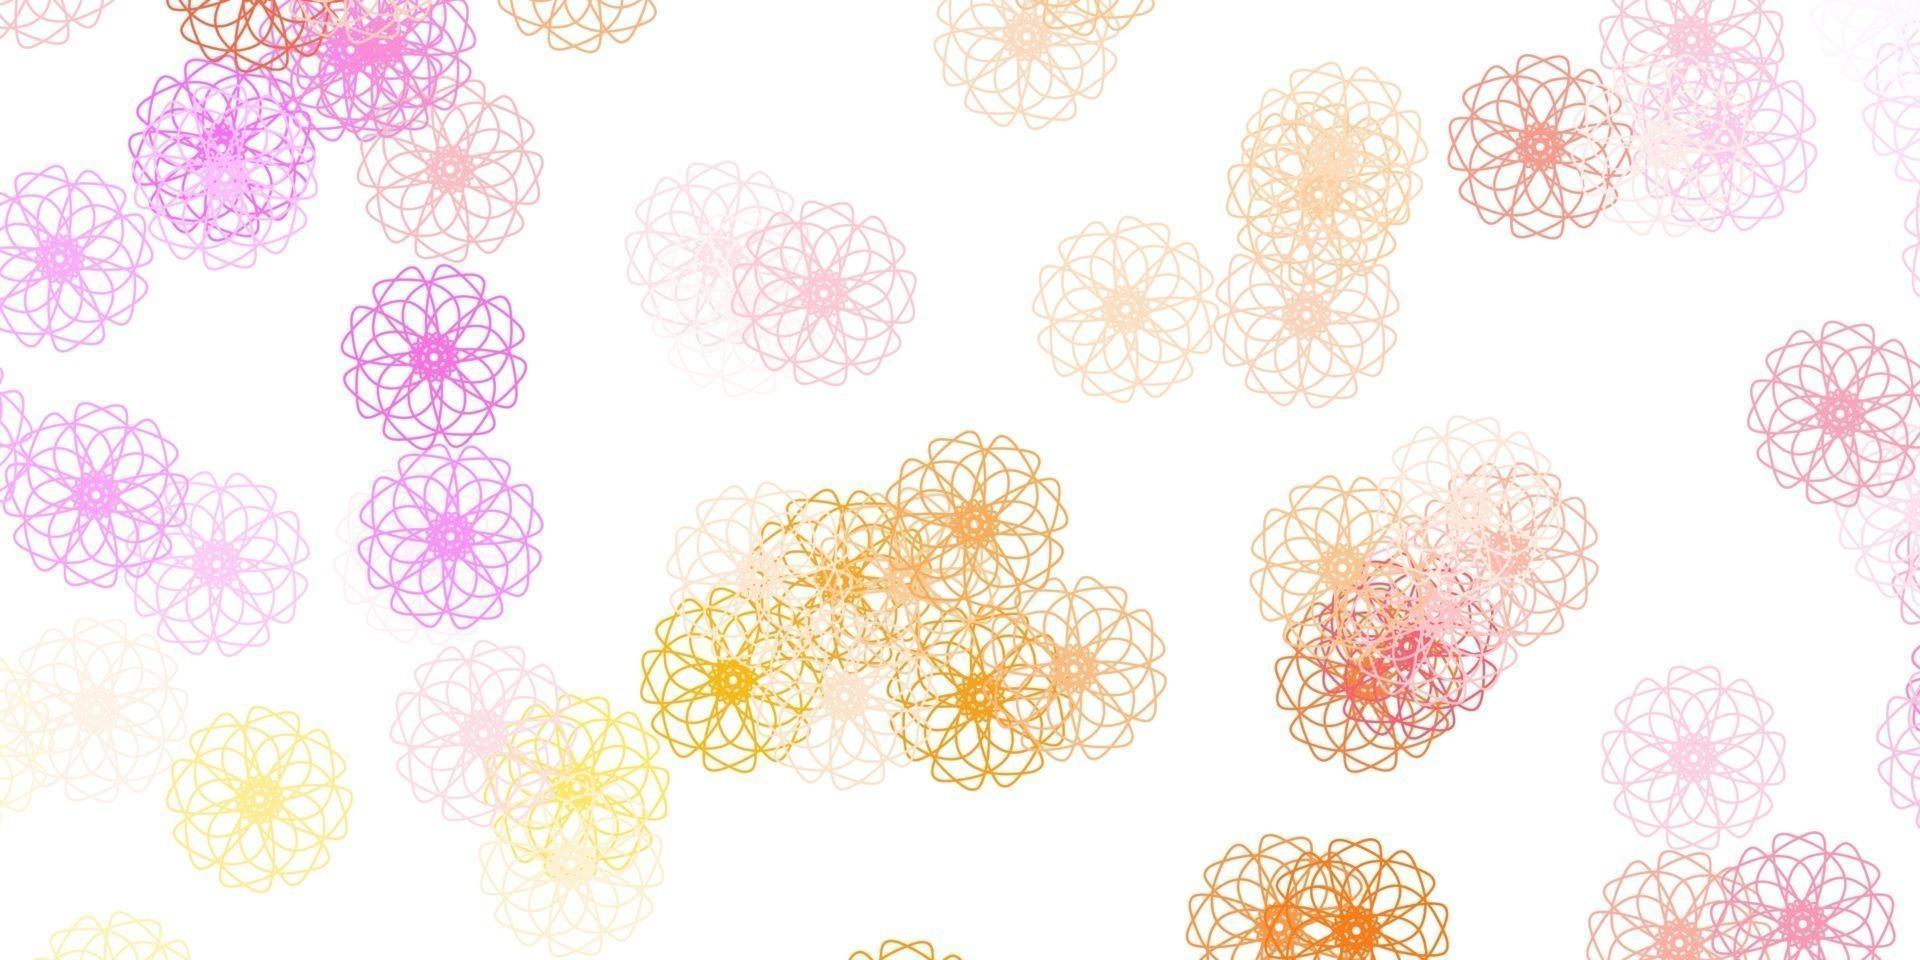 ljusrosa, gula vektor doodle mönster med blommor.